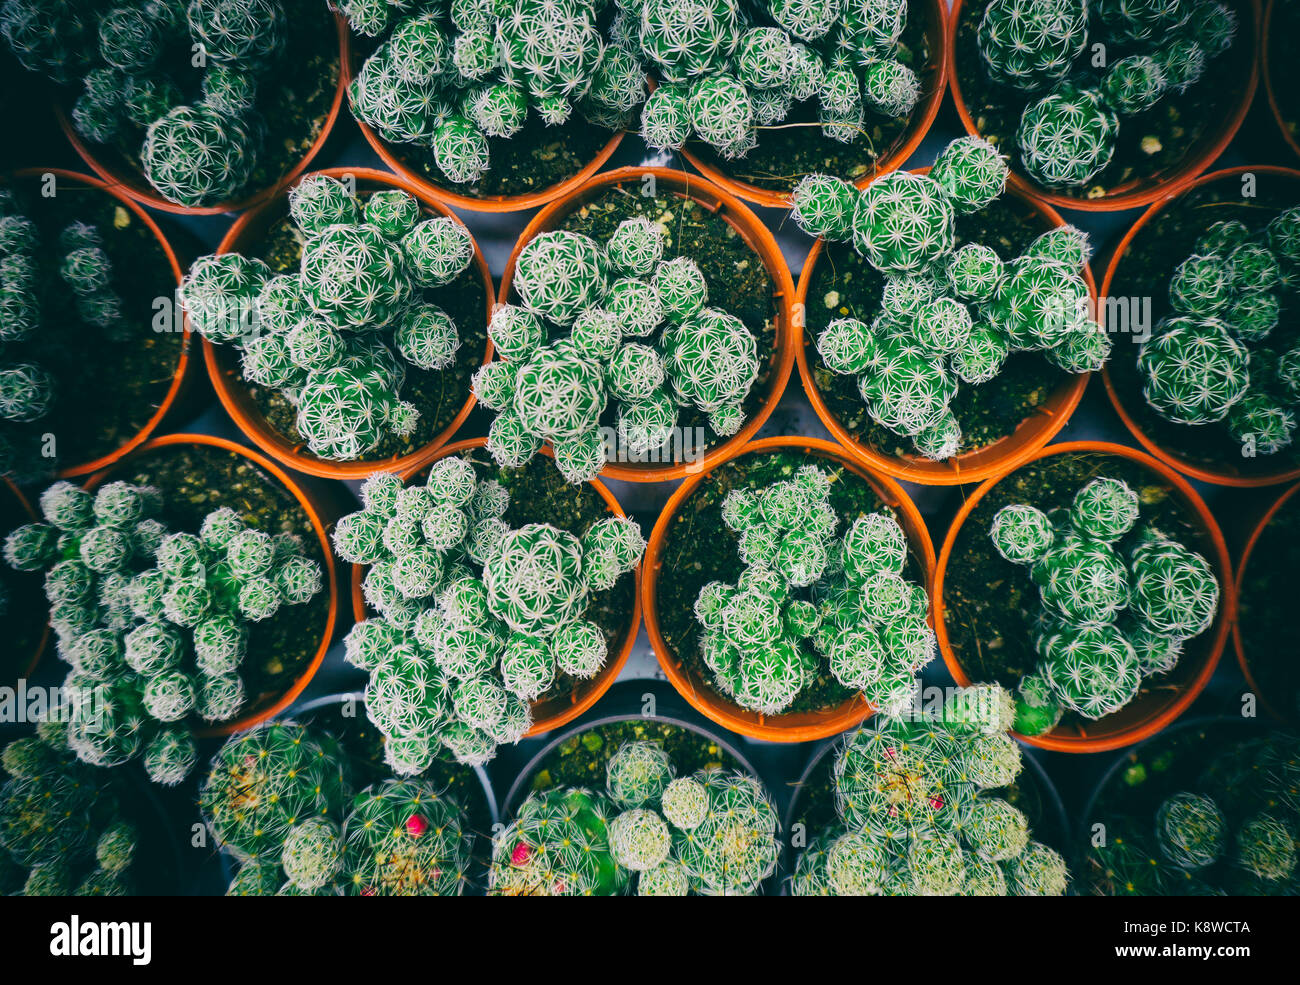 Ansicht der grünen Kaktus mit Retro styled Wirkung Stockfoto